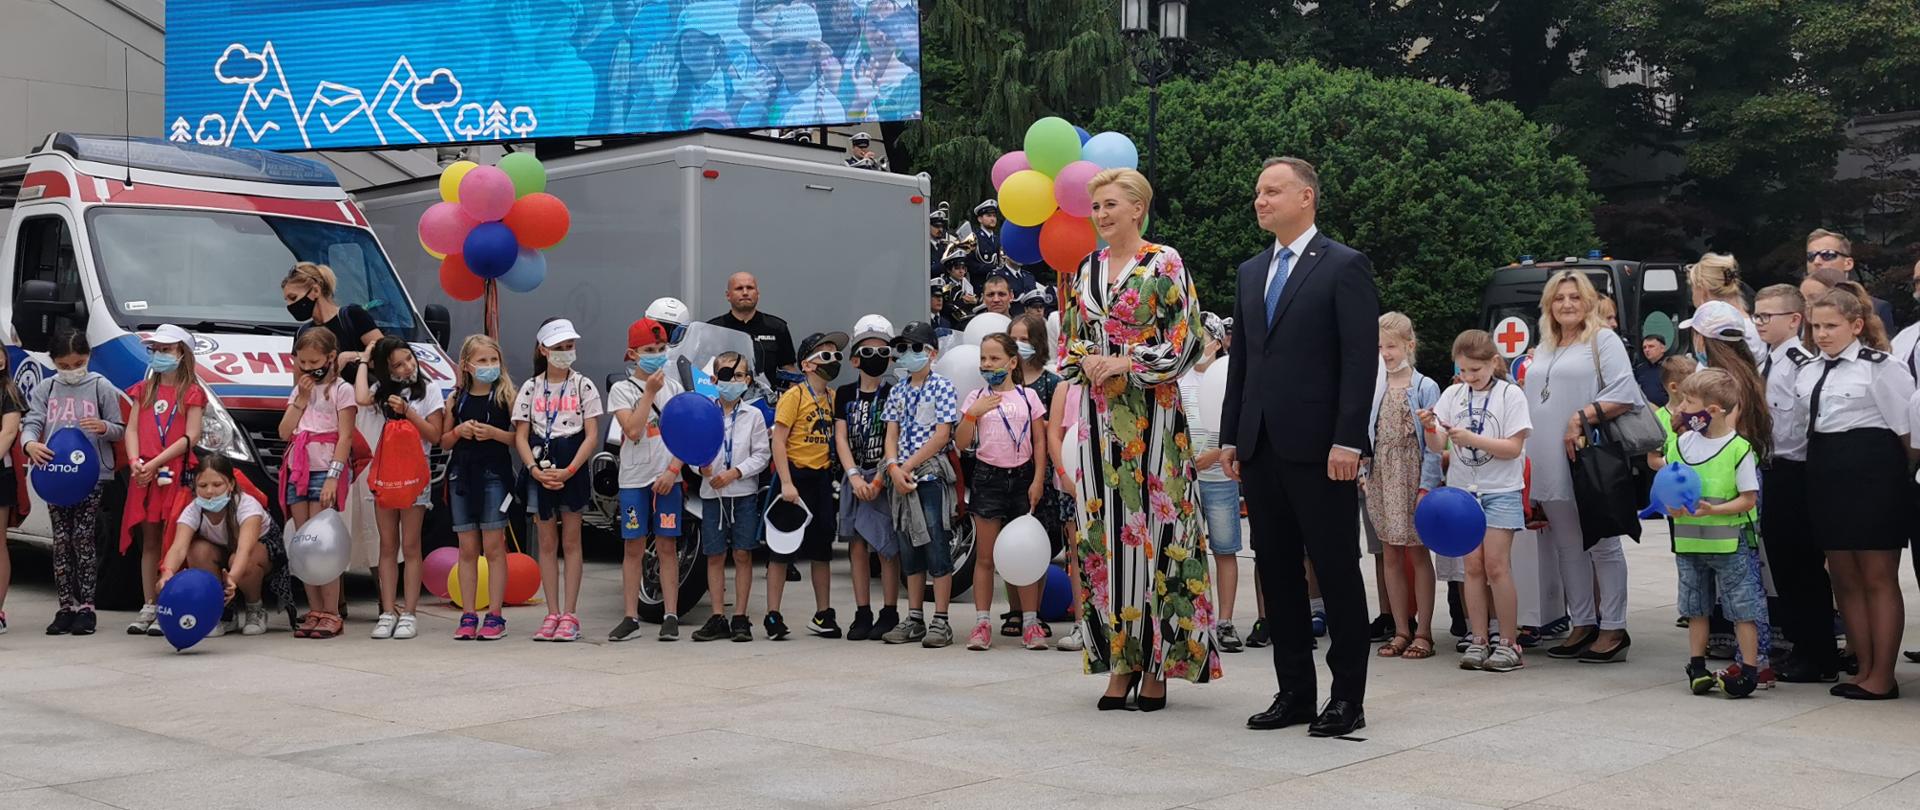 Prezydent RP z małżonką stoją na dziedzińcu ogrodu prezydenckiego w tle grupa dzieci i telebim z hasłem Bezpieczne Wakacje z Parą Prezydencką